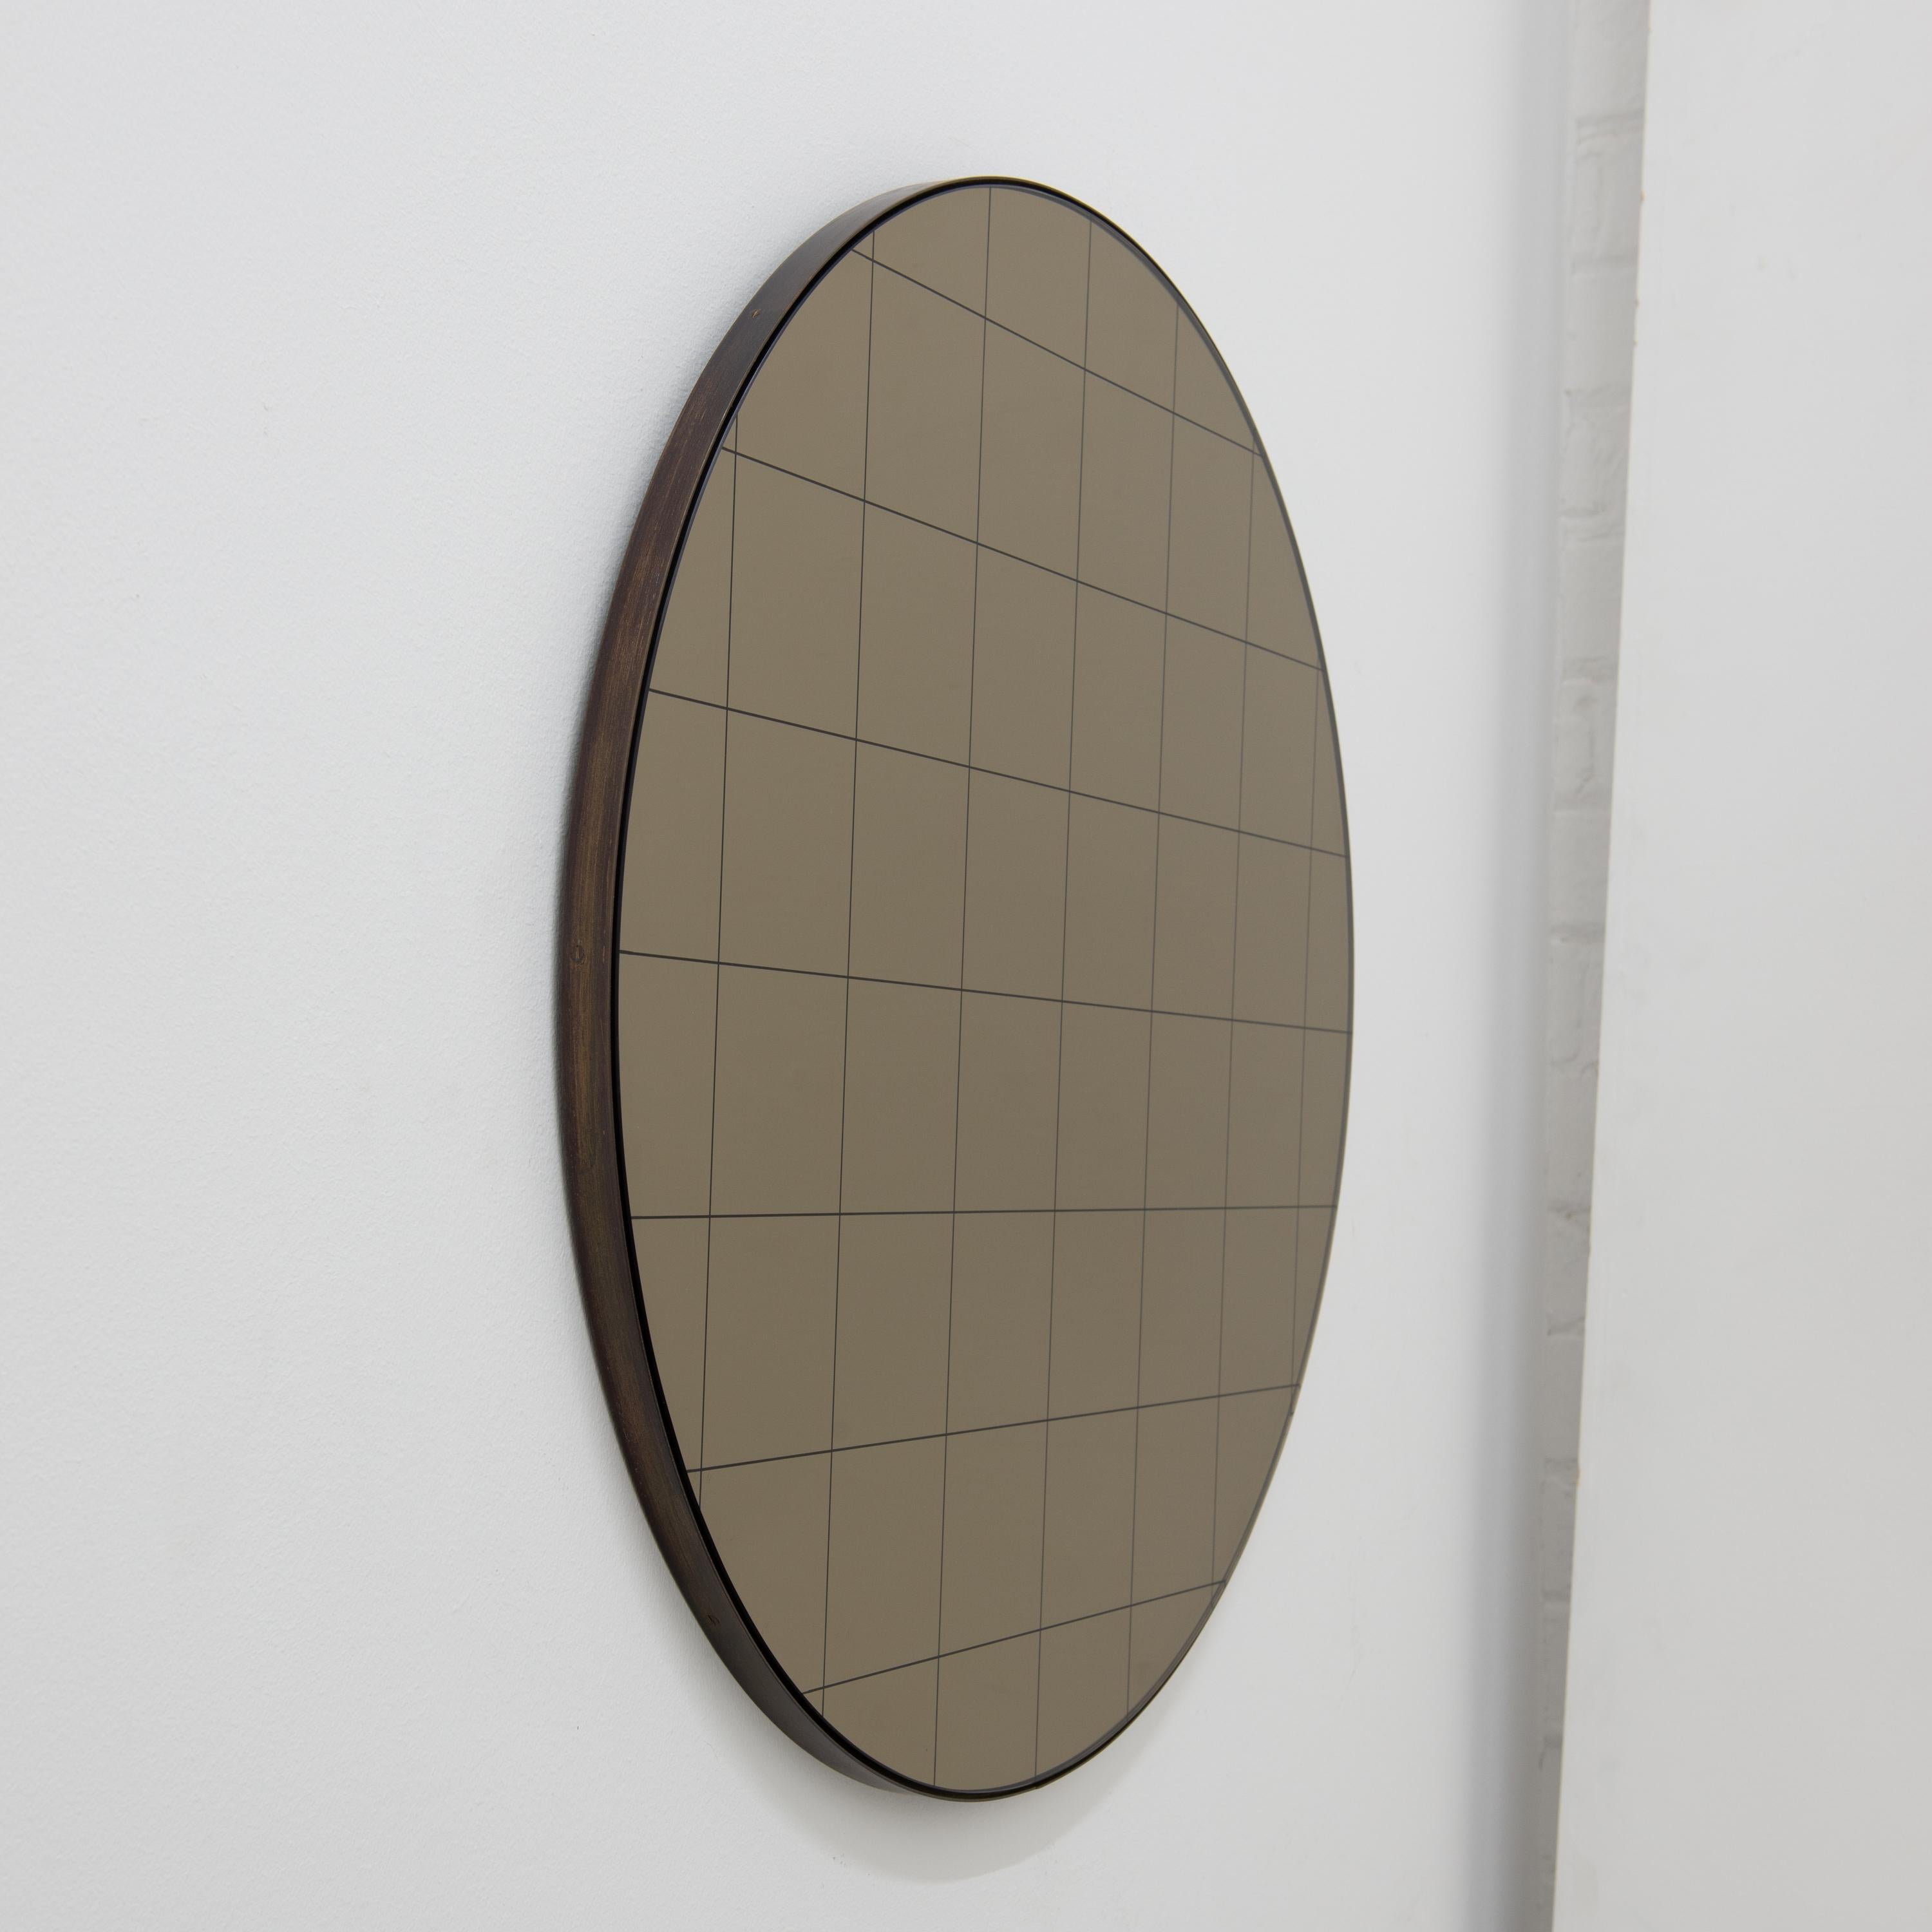 British Orbis Bronze Round Modern Mirror with Sandblasted Grid and Patina Frame, XL